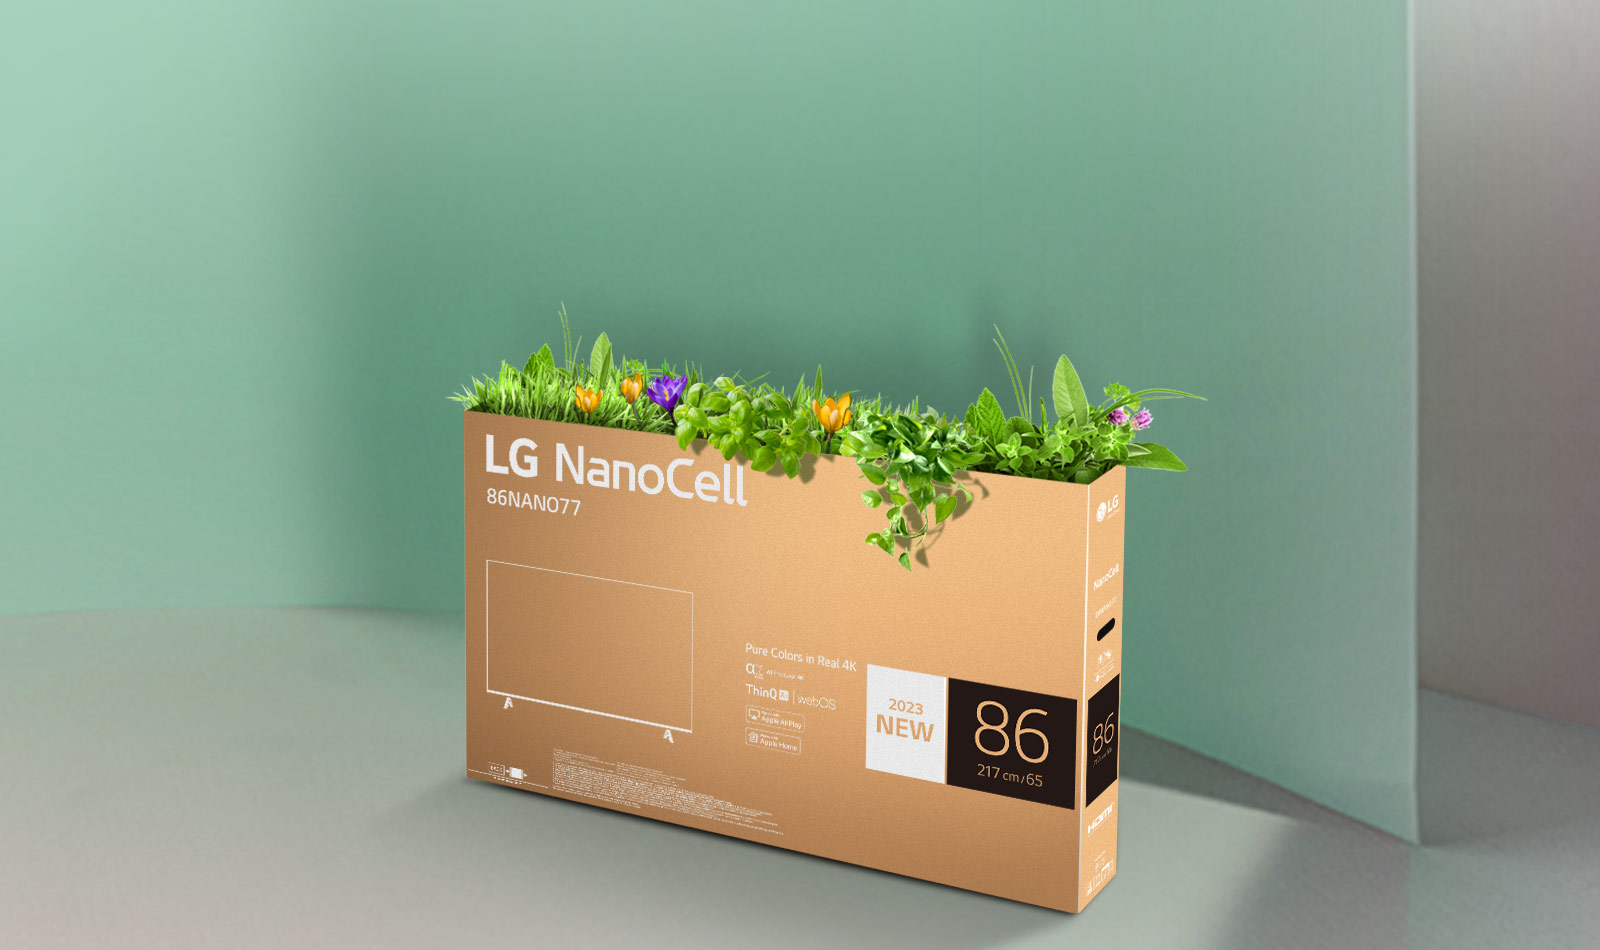 صندوق تلفاز خلايا النانو من LG القابل لإعادة التدوير بأزهار ونباتات تتبرعم من أعلاه.